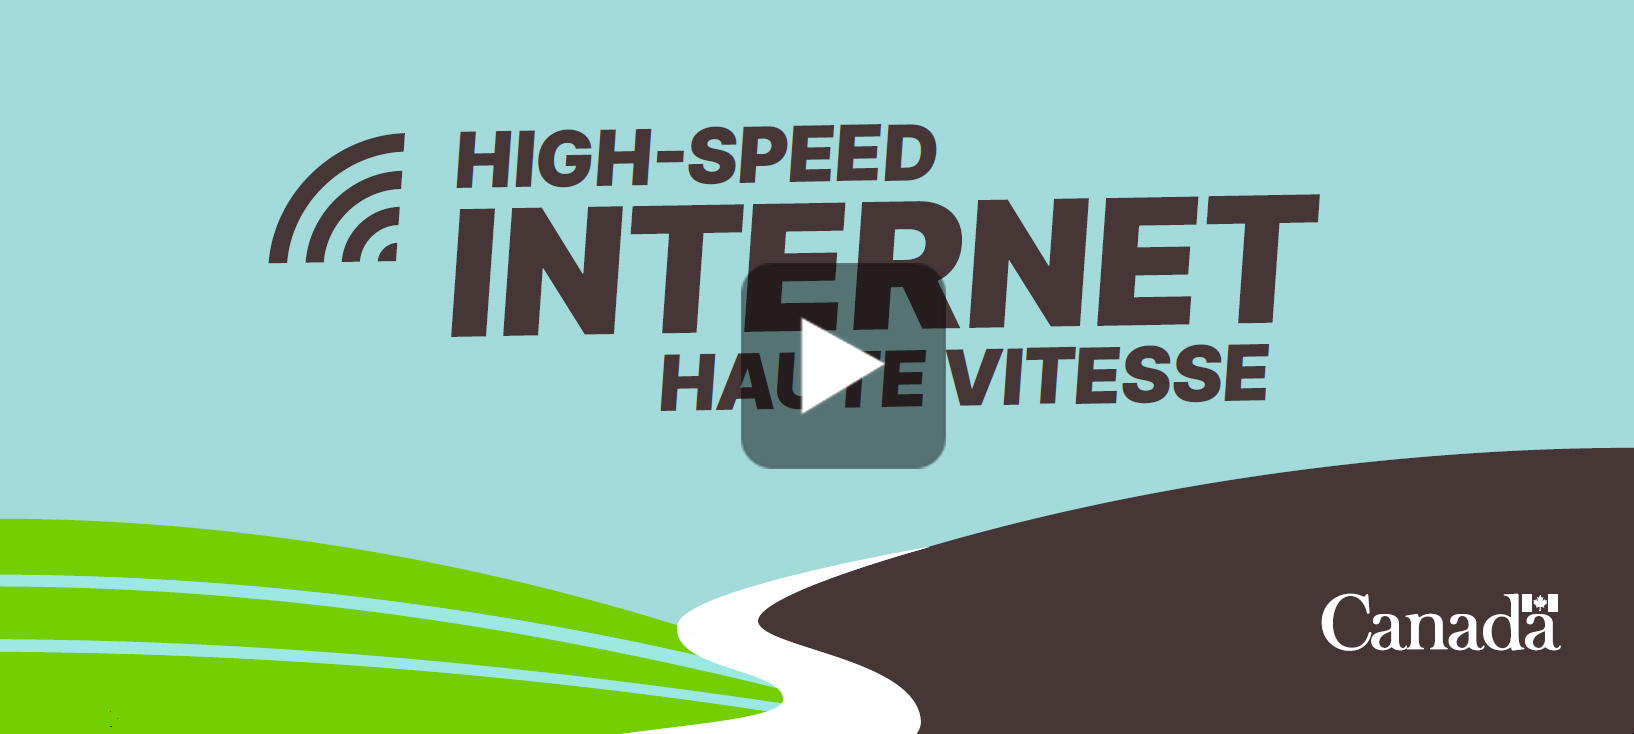 Progrès du Canada vers un accès universel à Internet haute vitesse    